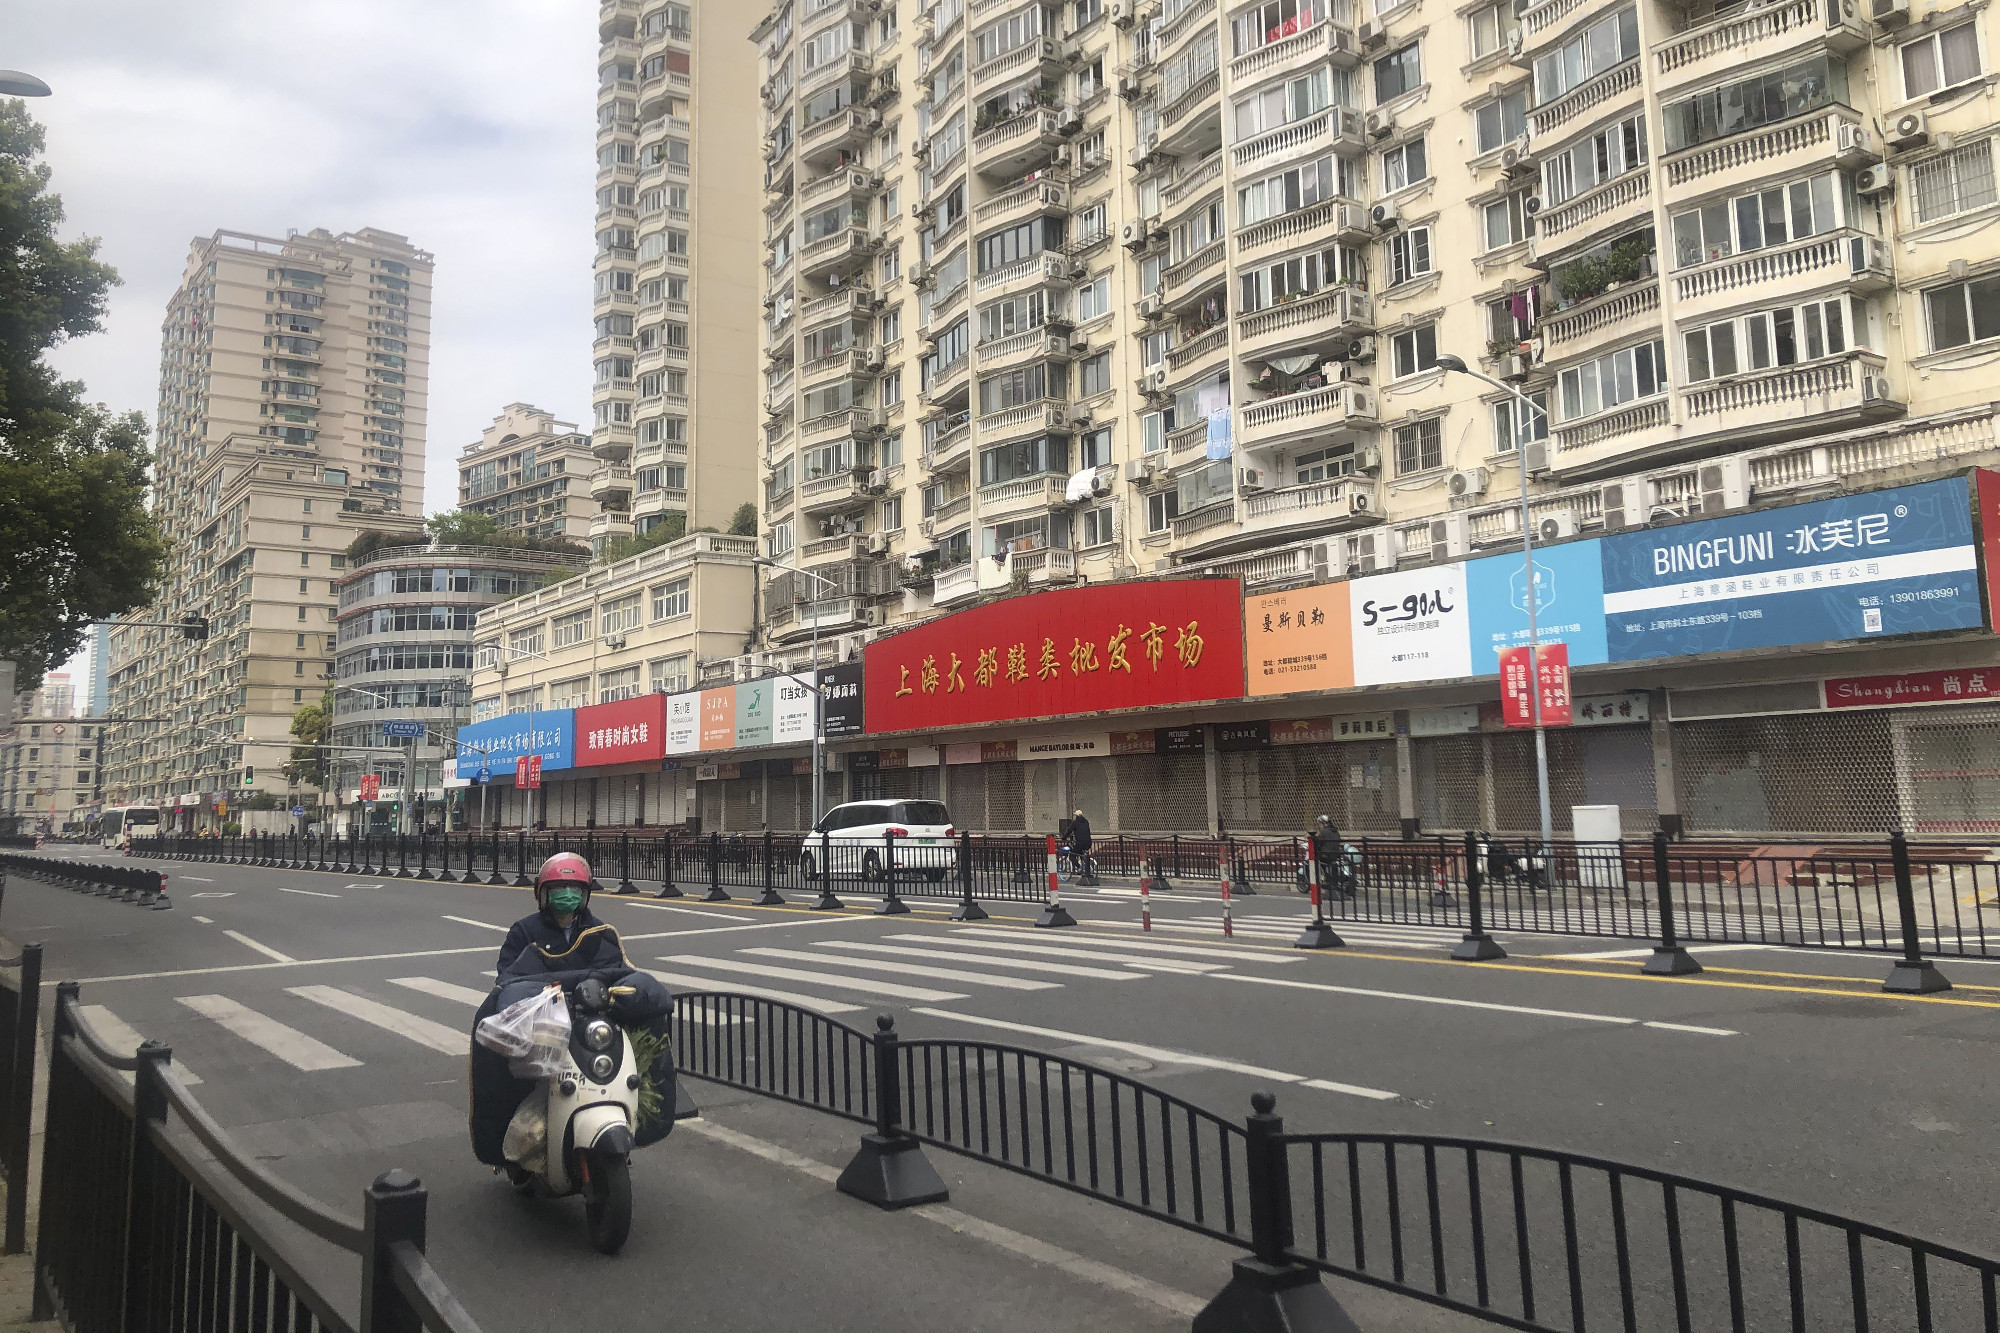 Feloldották a vesztegzárat Sanghaj egyes részein